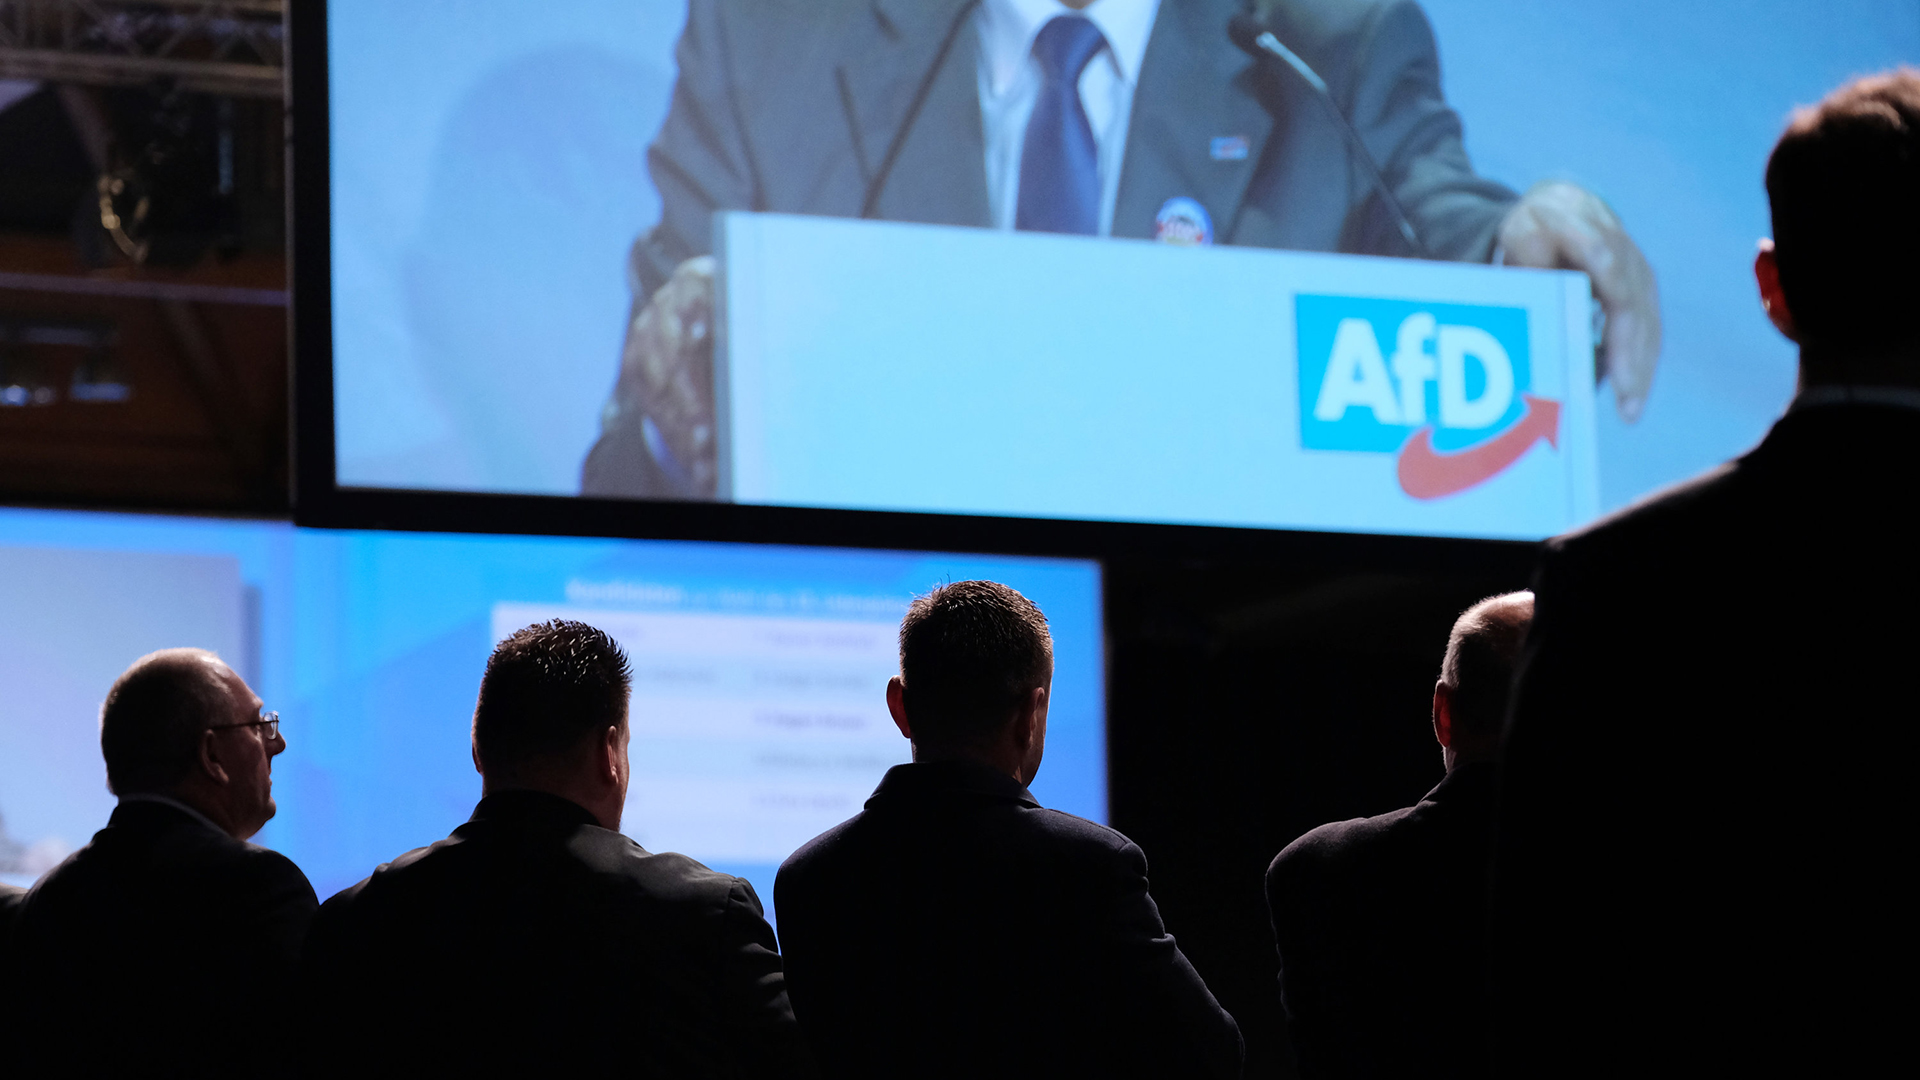 Teilnehmer der Europawahlversammlung der Alternative für Deutschland (AfD) verfolgen eine Rede. | Bildquelle: dpa